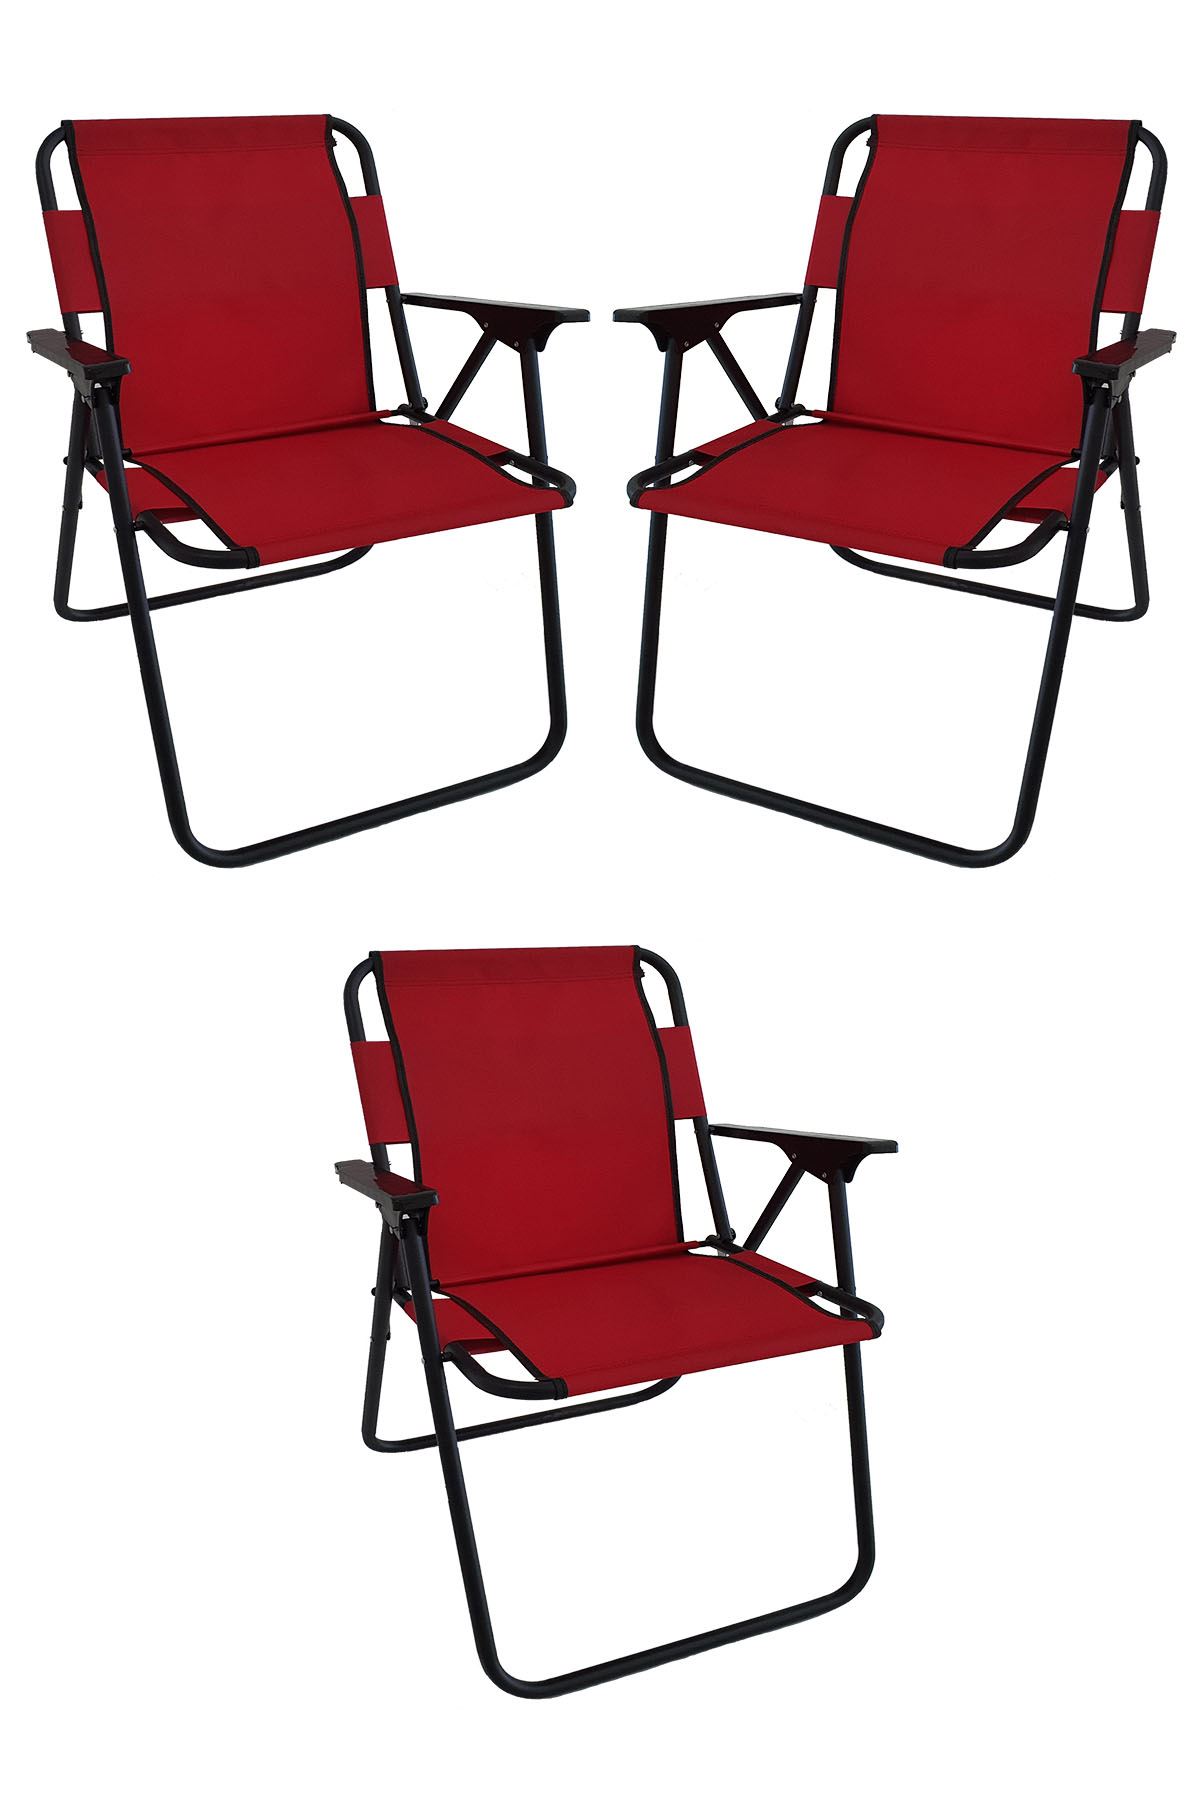 Bofigo 3 Adet Kamp Sandalyesi Katlanır Sandalye Piknik Sandalyesi Plaj Sandalyesi Kırmızı